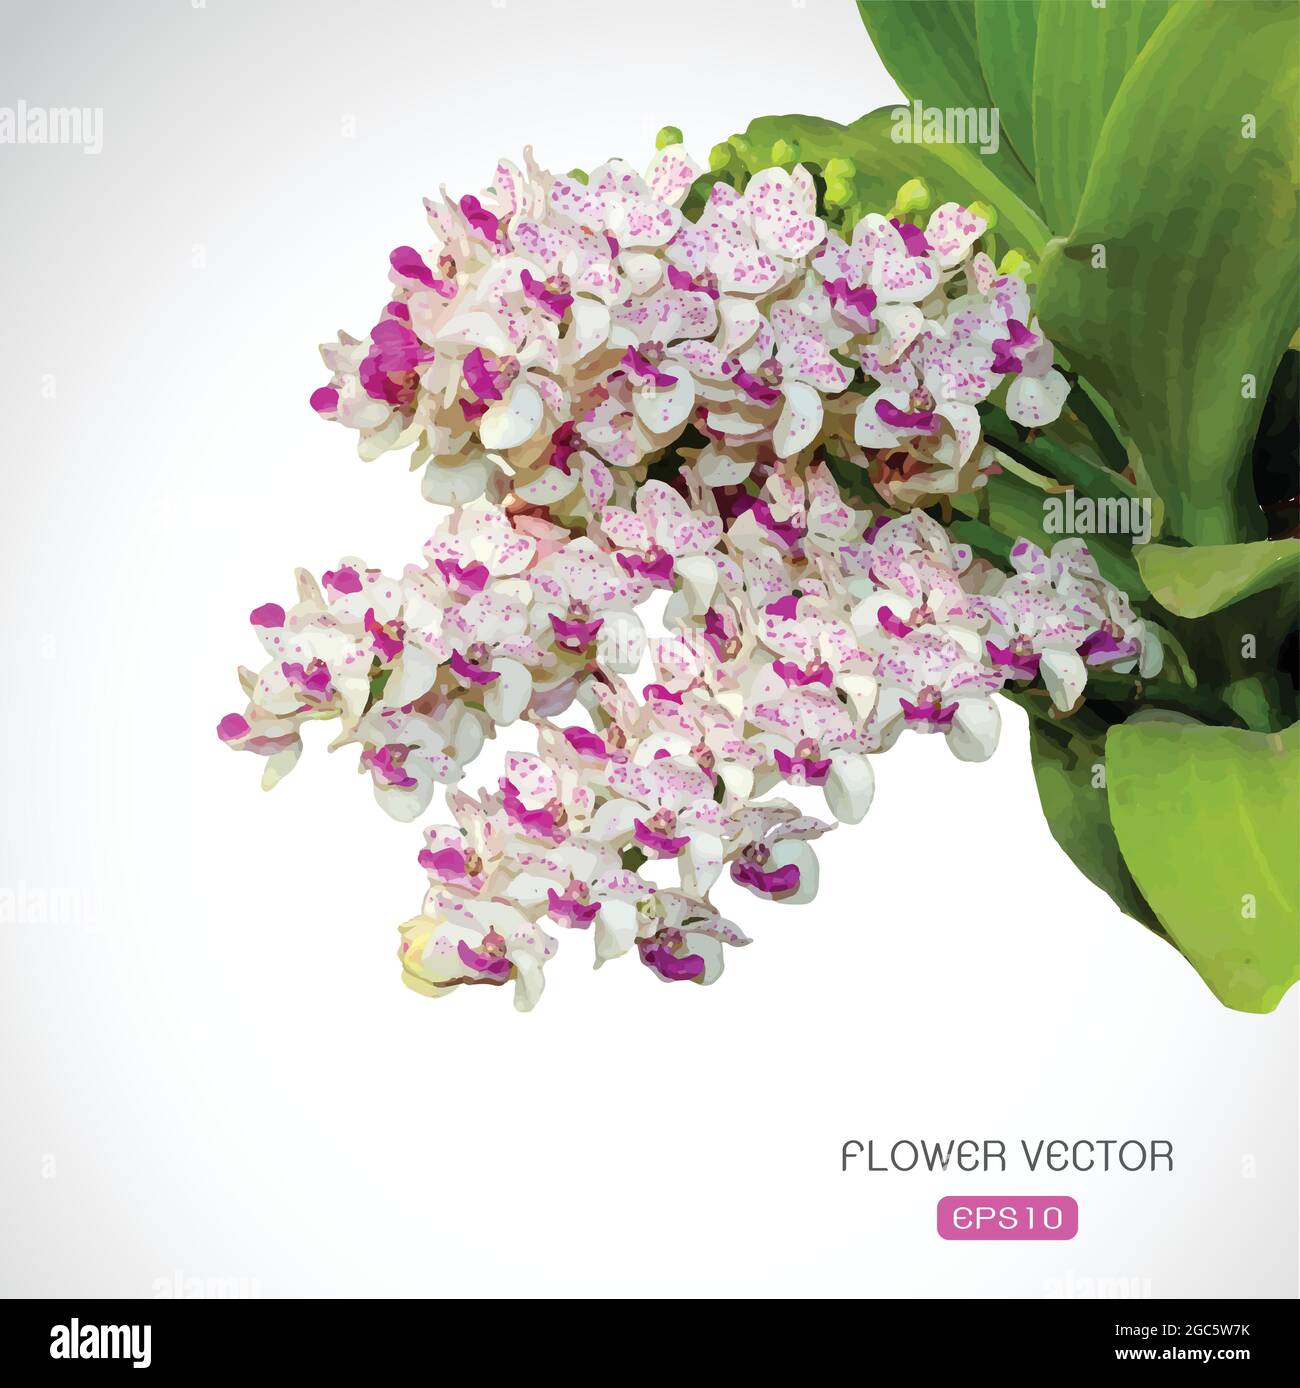 Image vectorielle de la fleur d'orchidée sur fond blanc Illustration de Vecteur